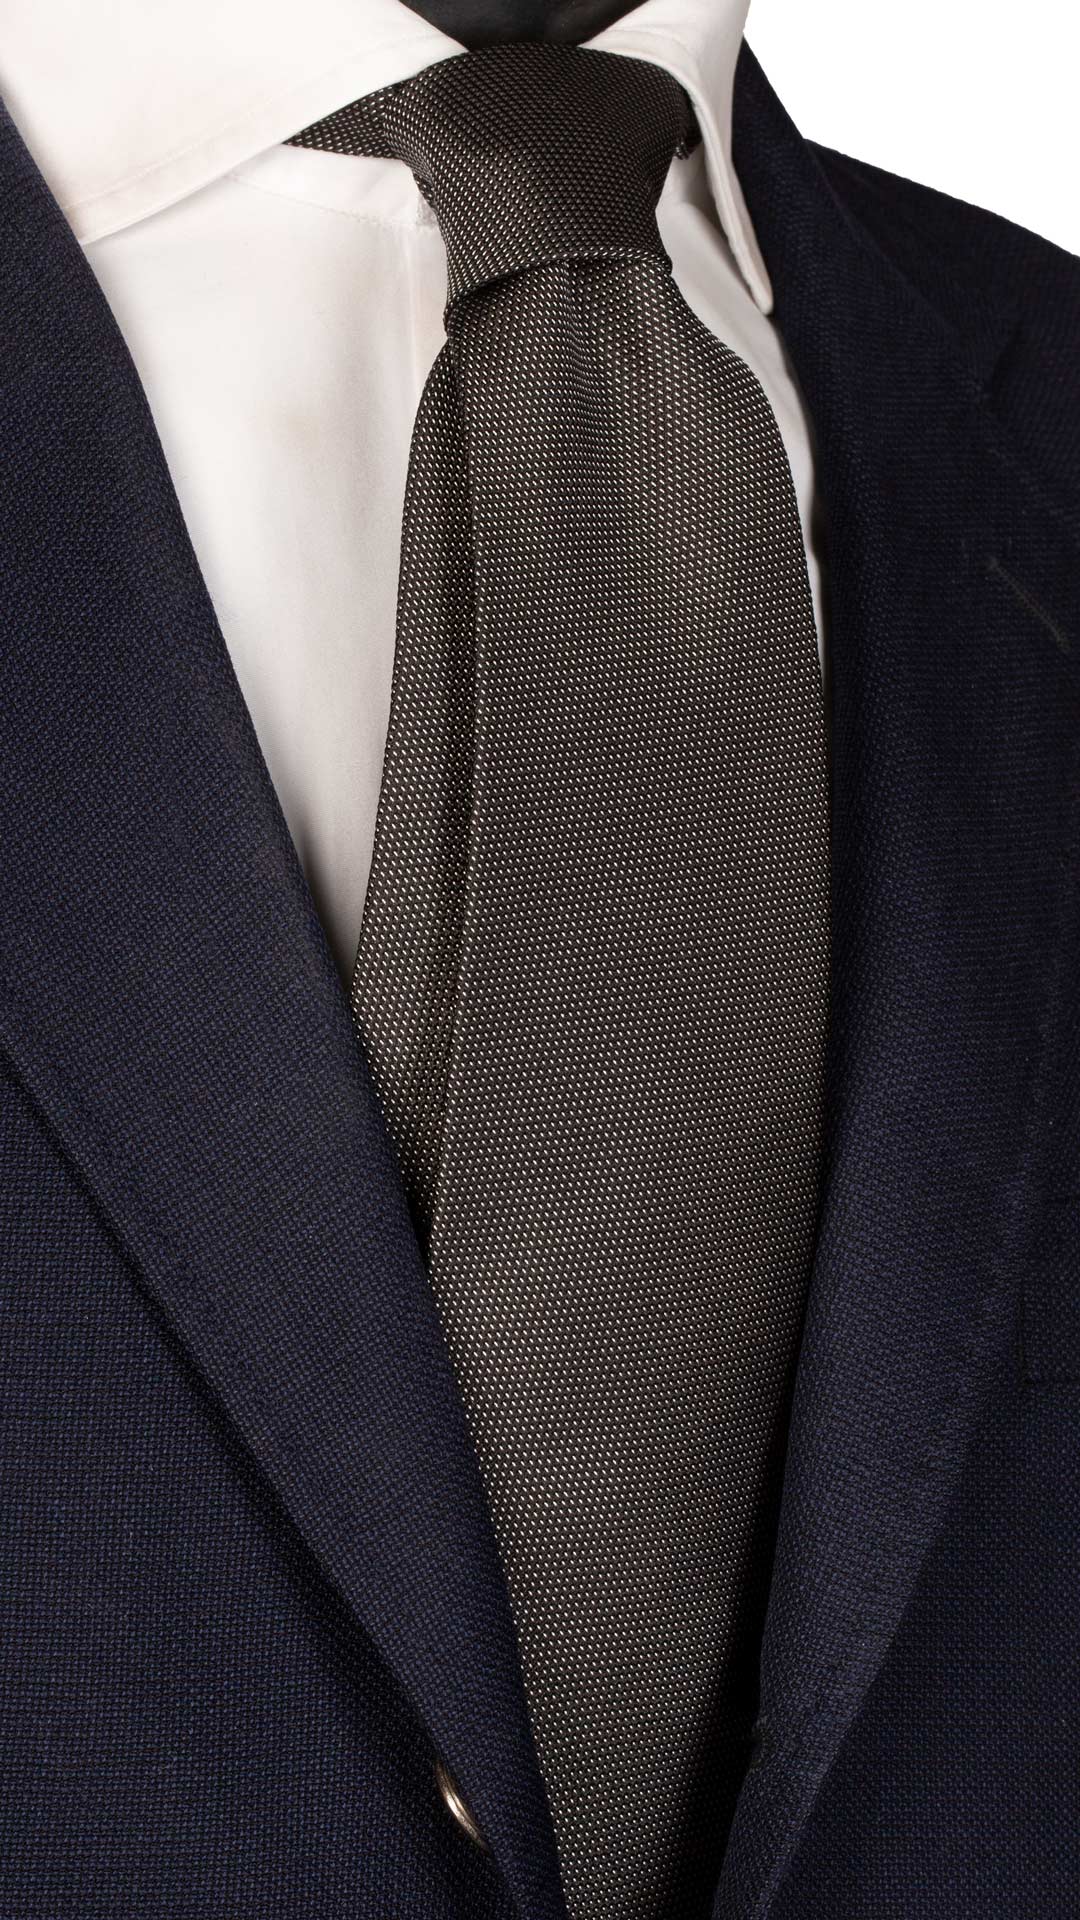 Cravatta da Cerimonia di Seta Nera Punto a Spillo Bianco Made in italy Graffeo Cravatte